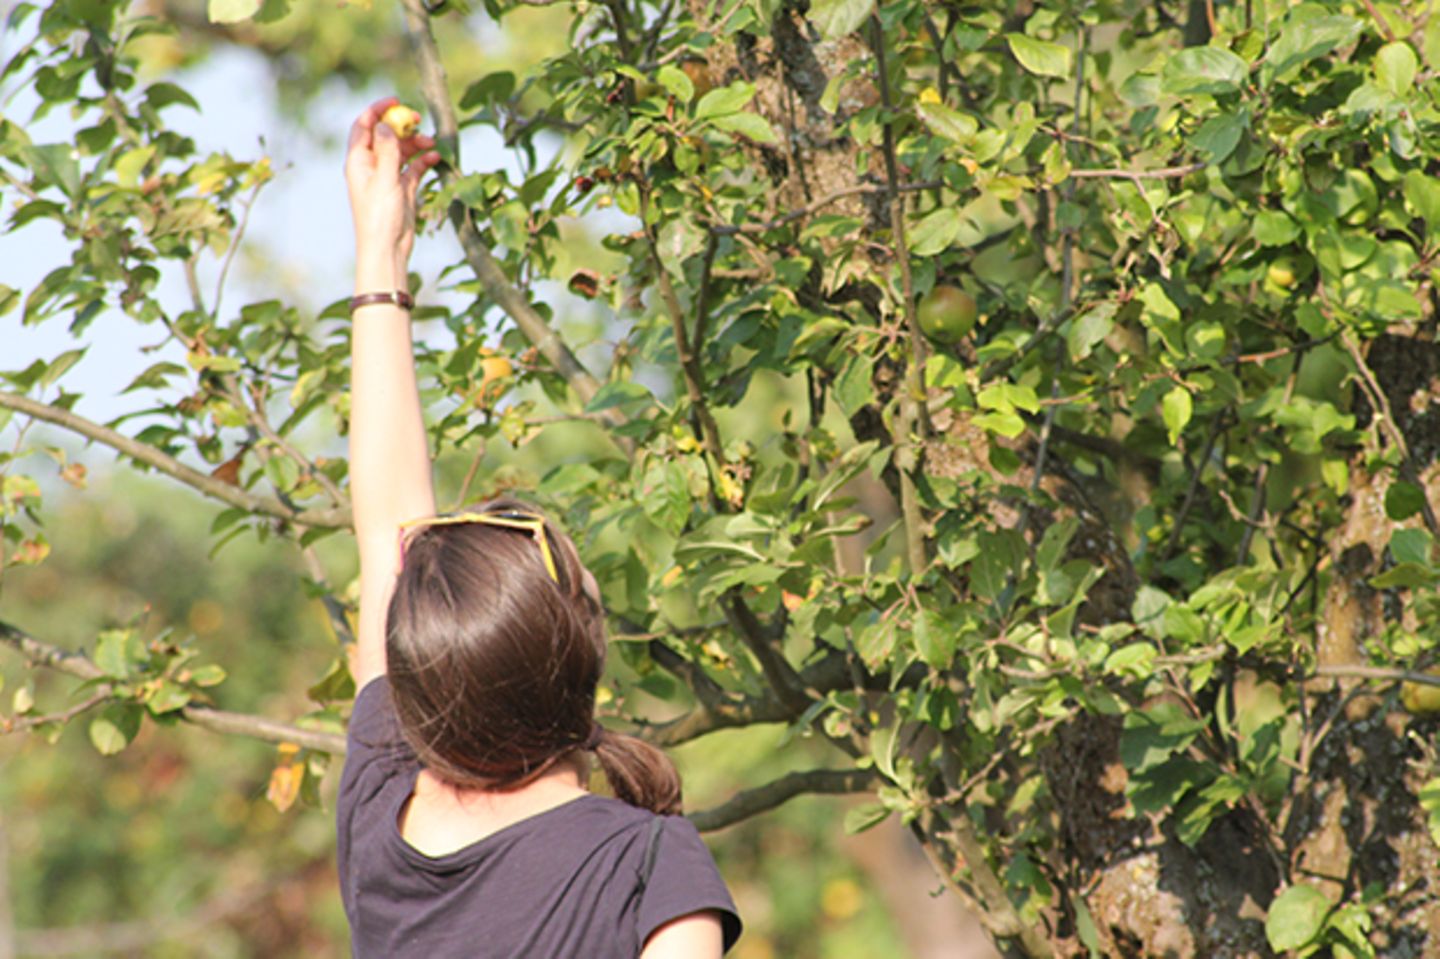 Frau pflückt einen Mini-Apfel vom Baum